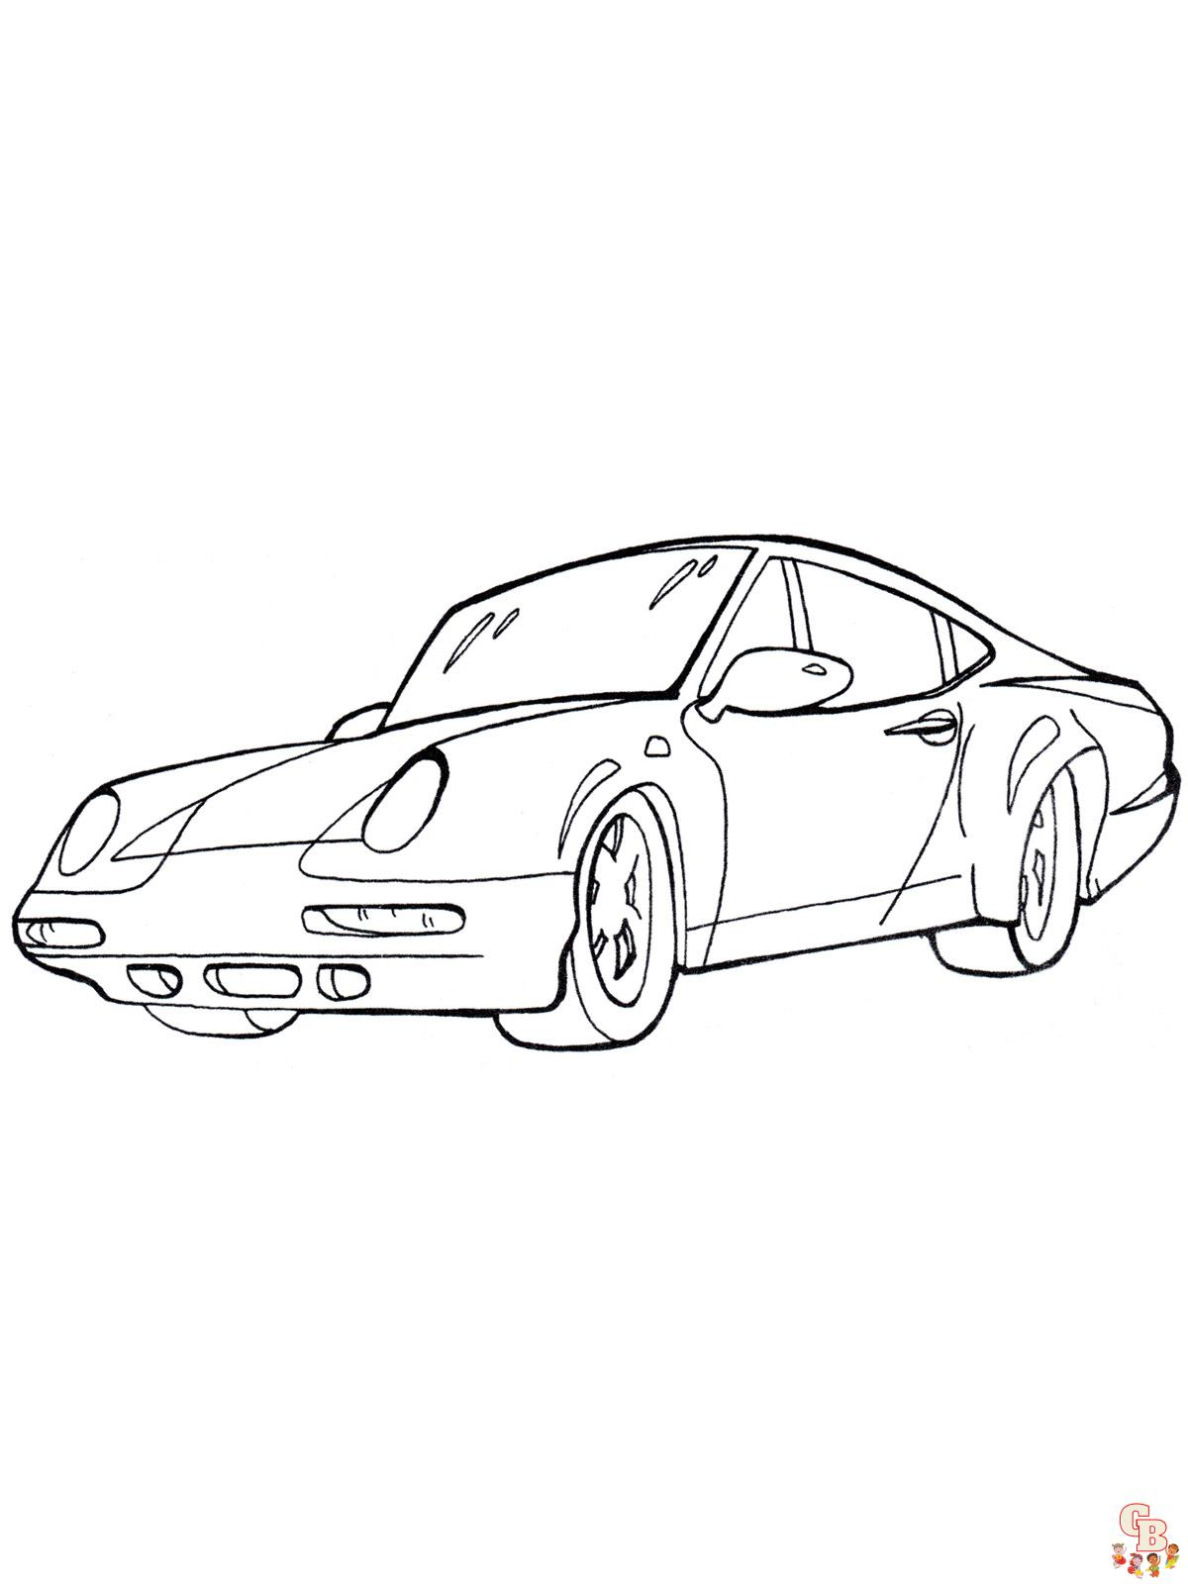 Kleurplaat Porsche 911